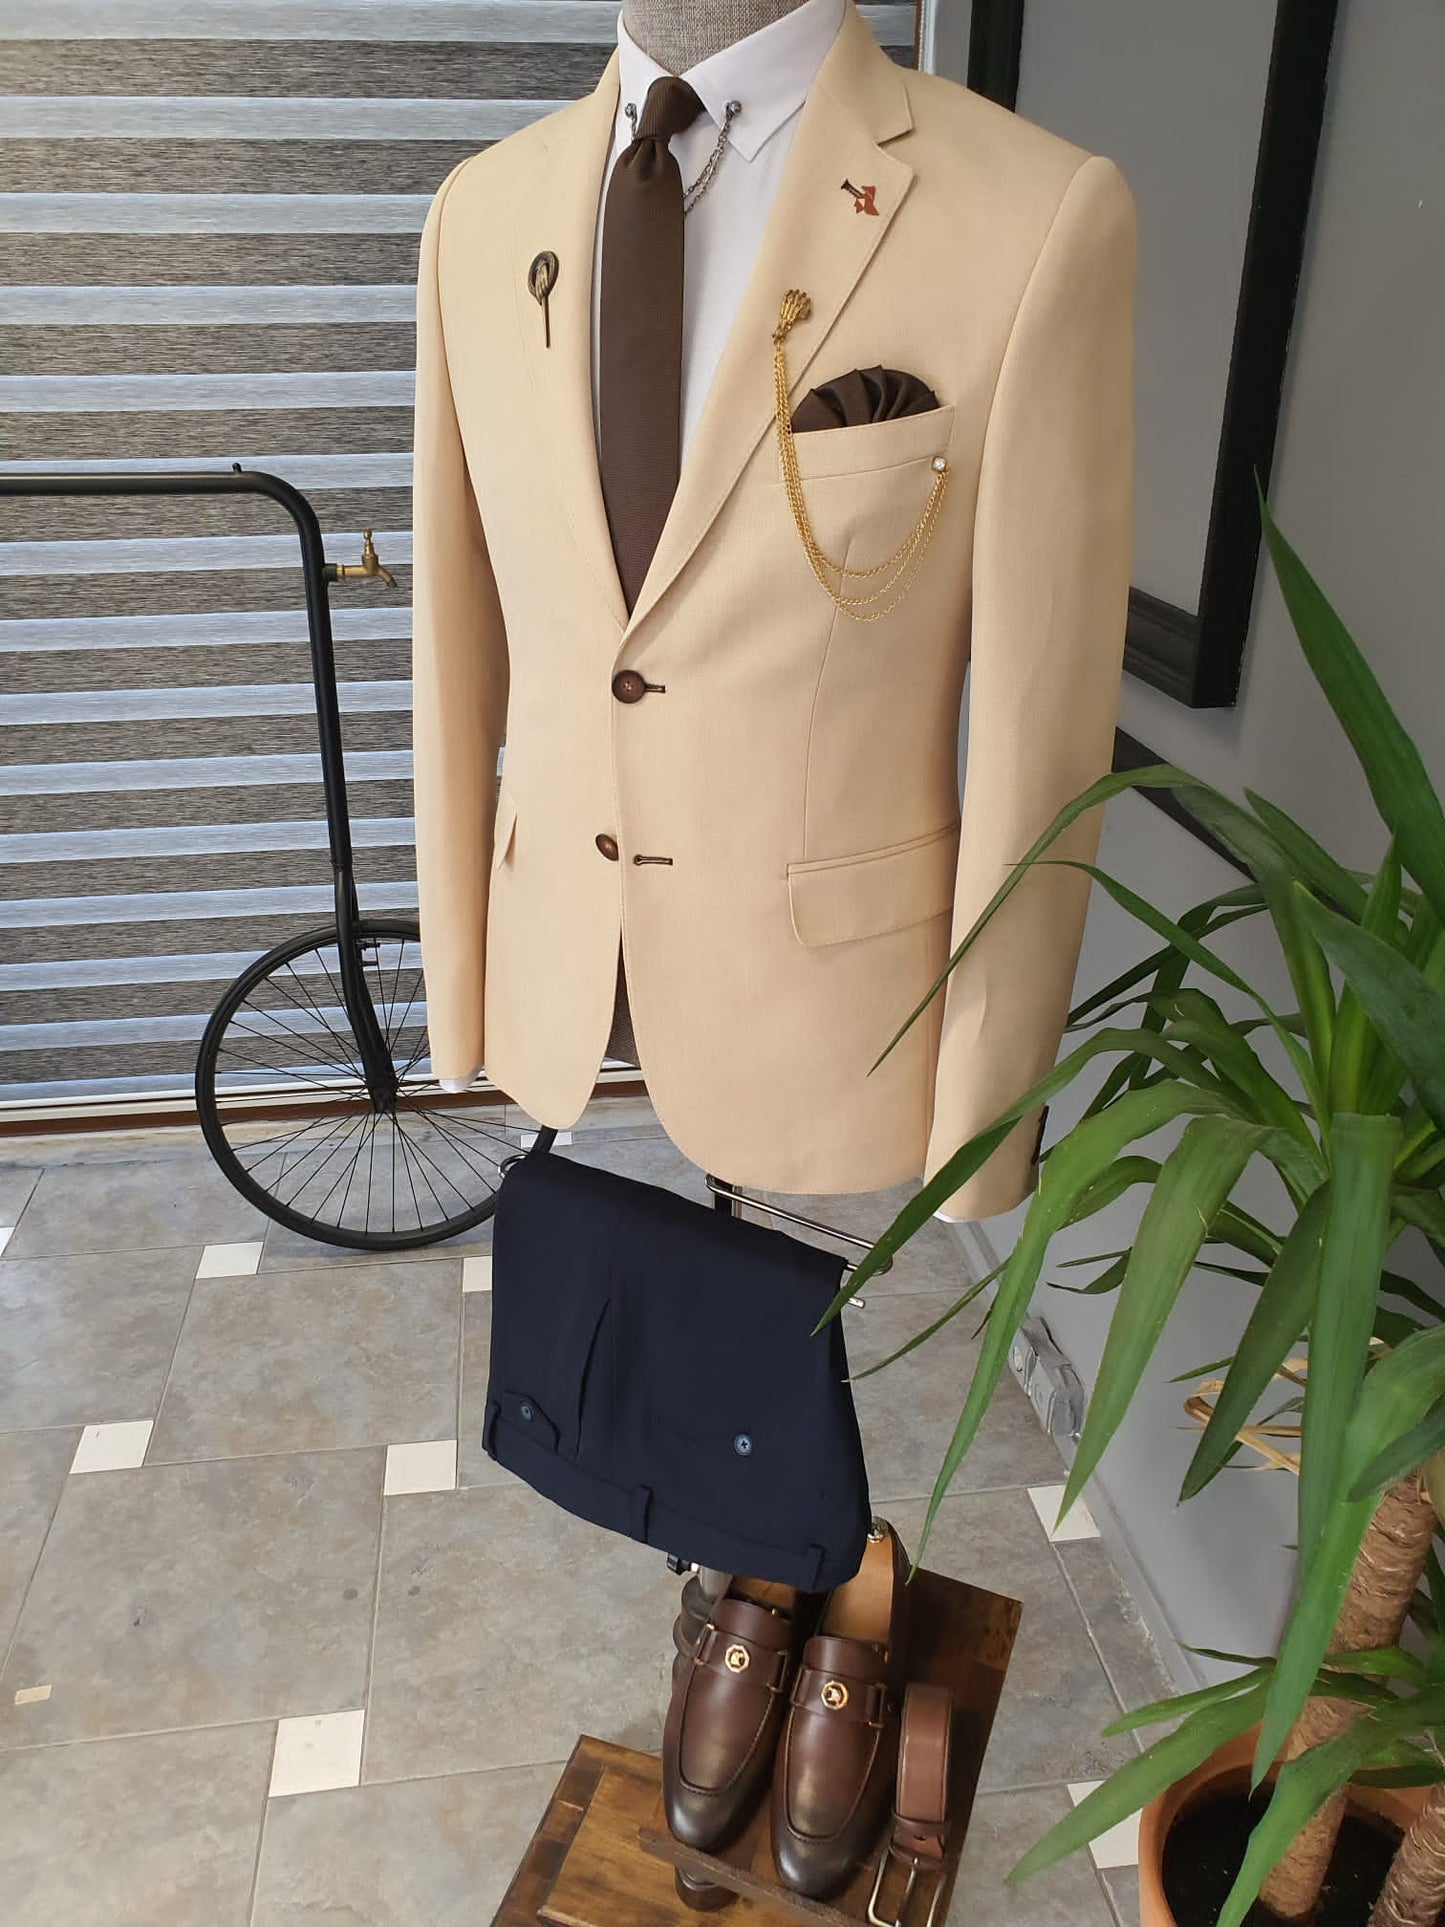 Berton Beige Slim Fit Notch Lapel Cotton Suit